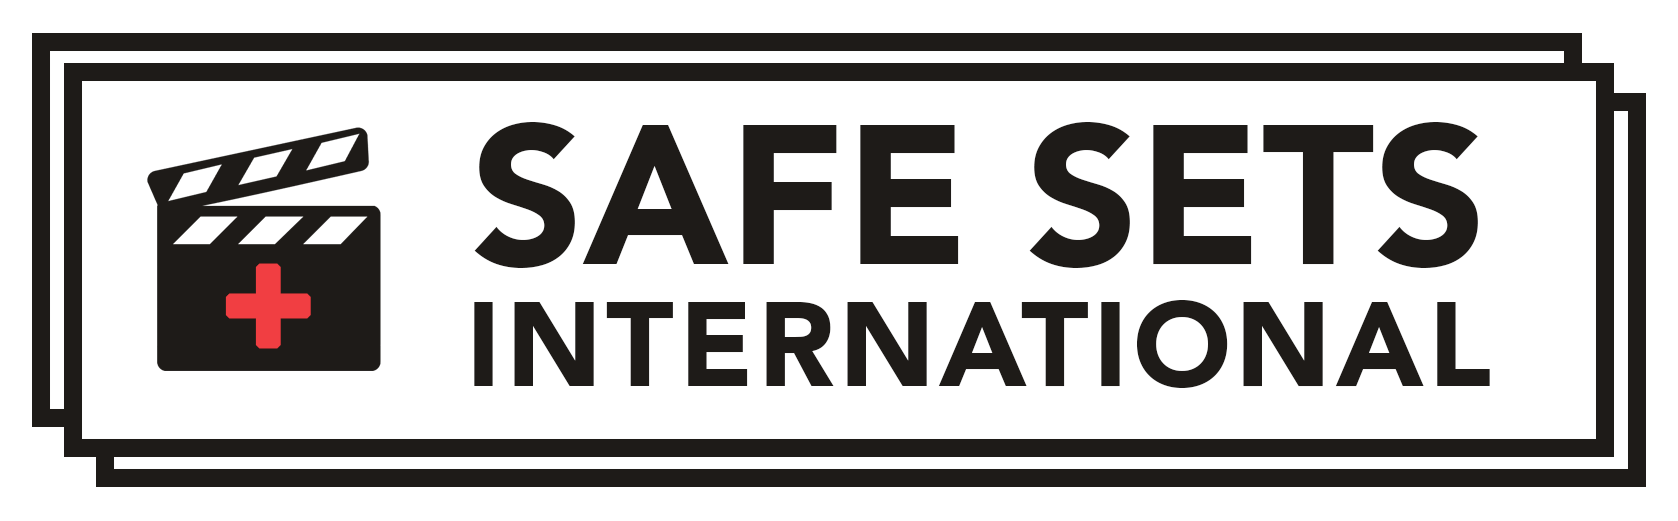 Safe Sets International